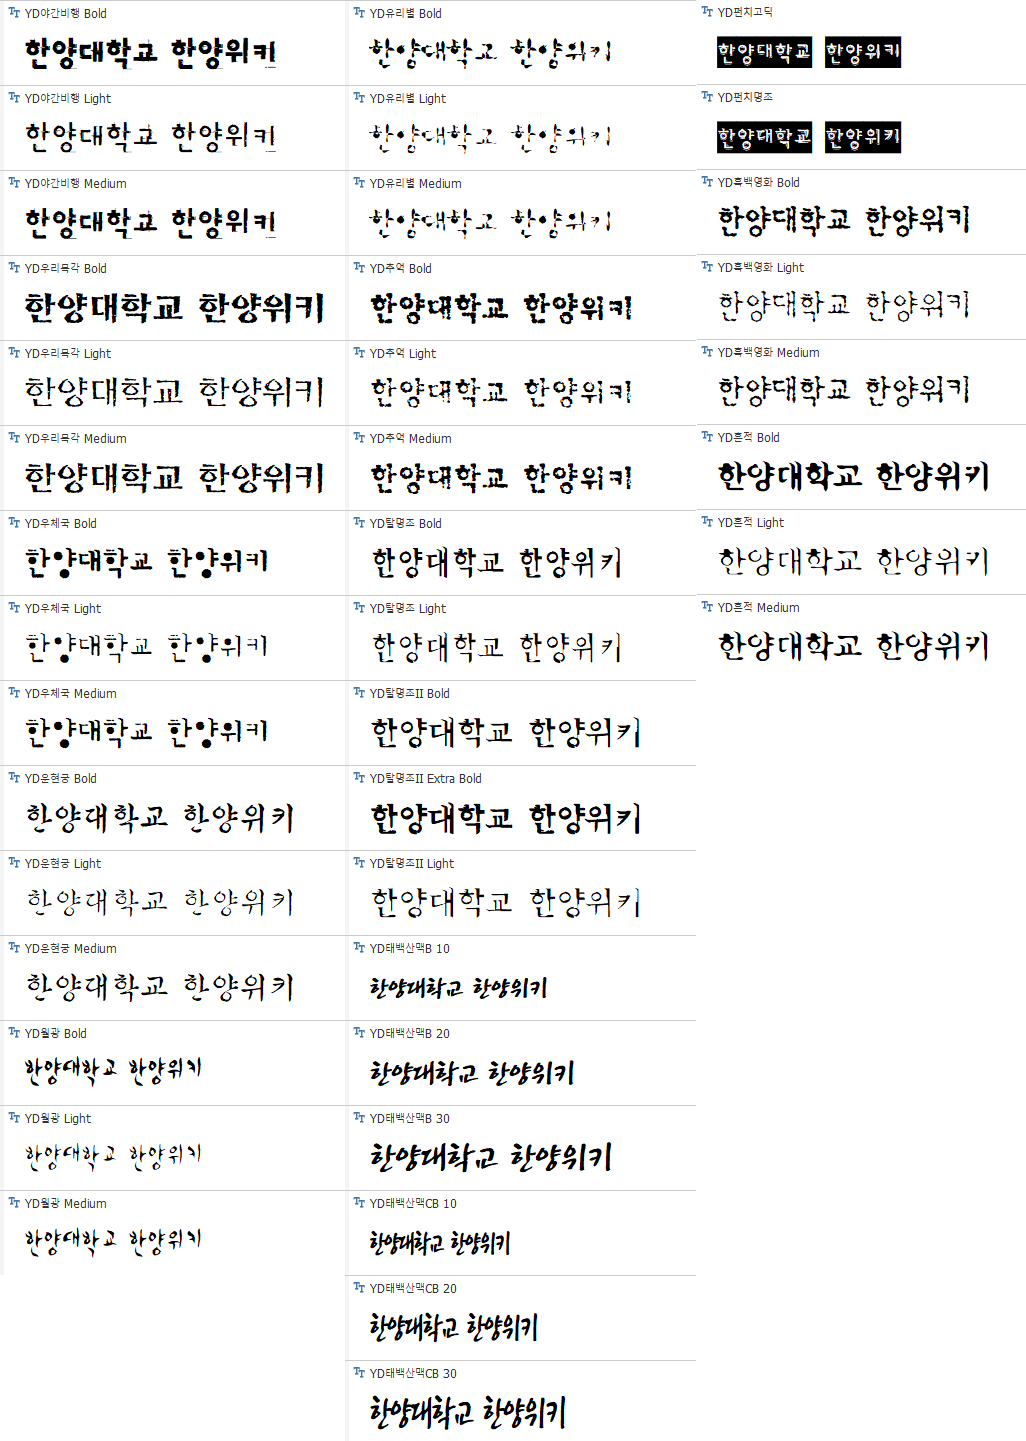 윤소호 2011 패키지 - 붓글씨2.png